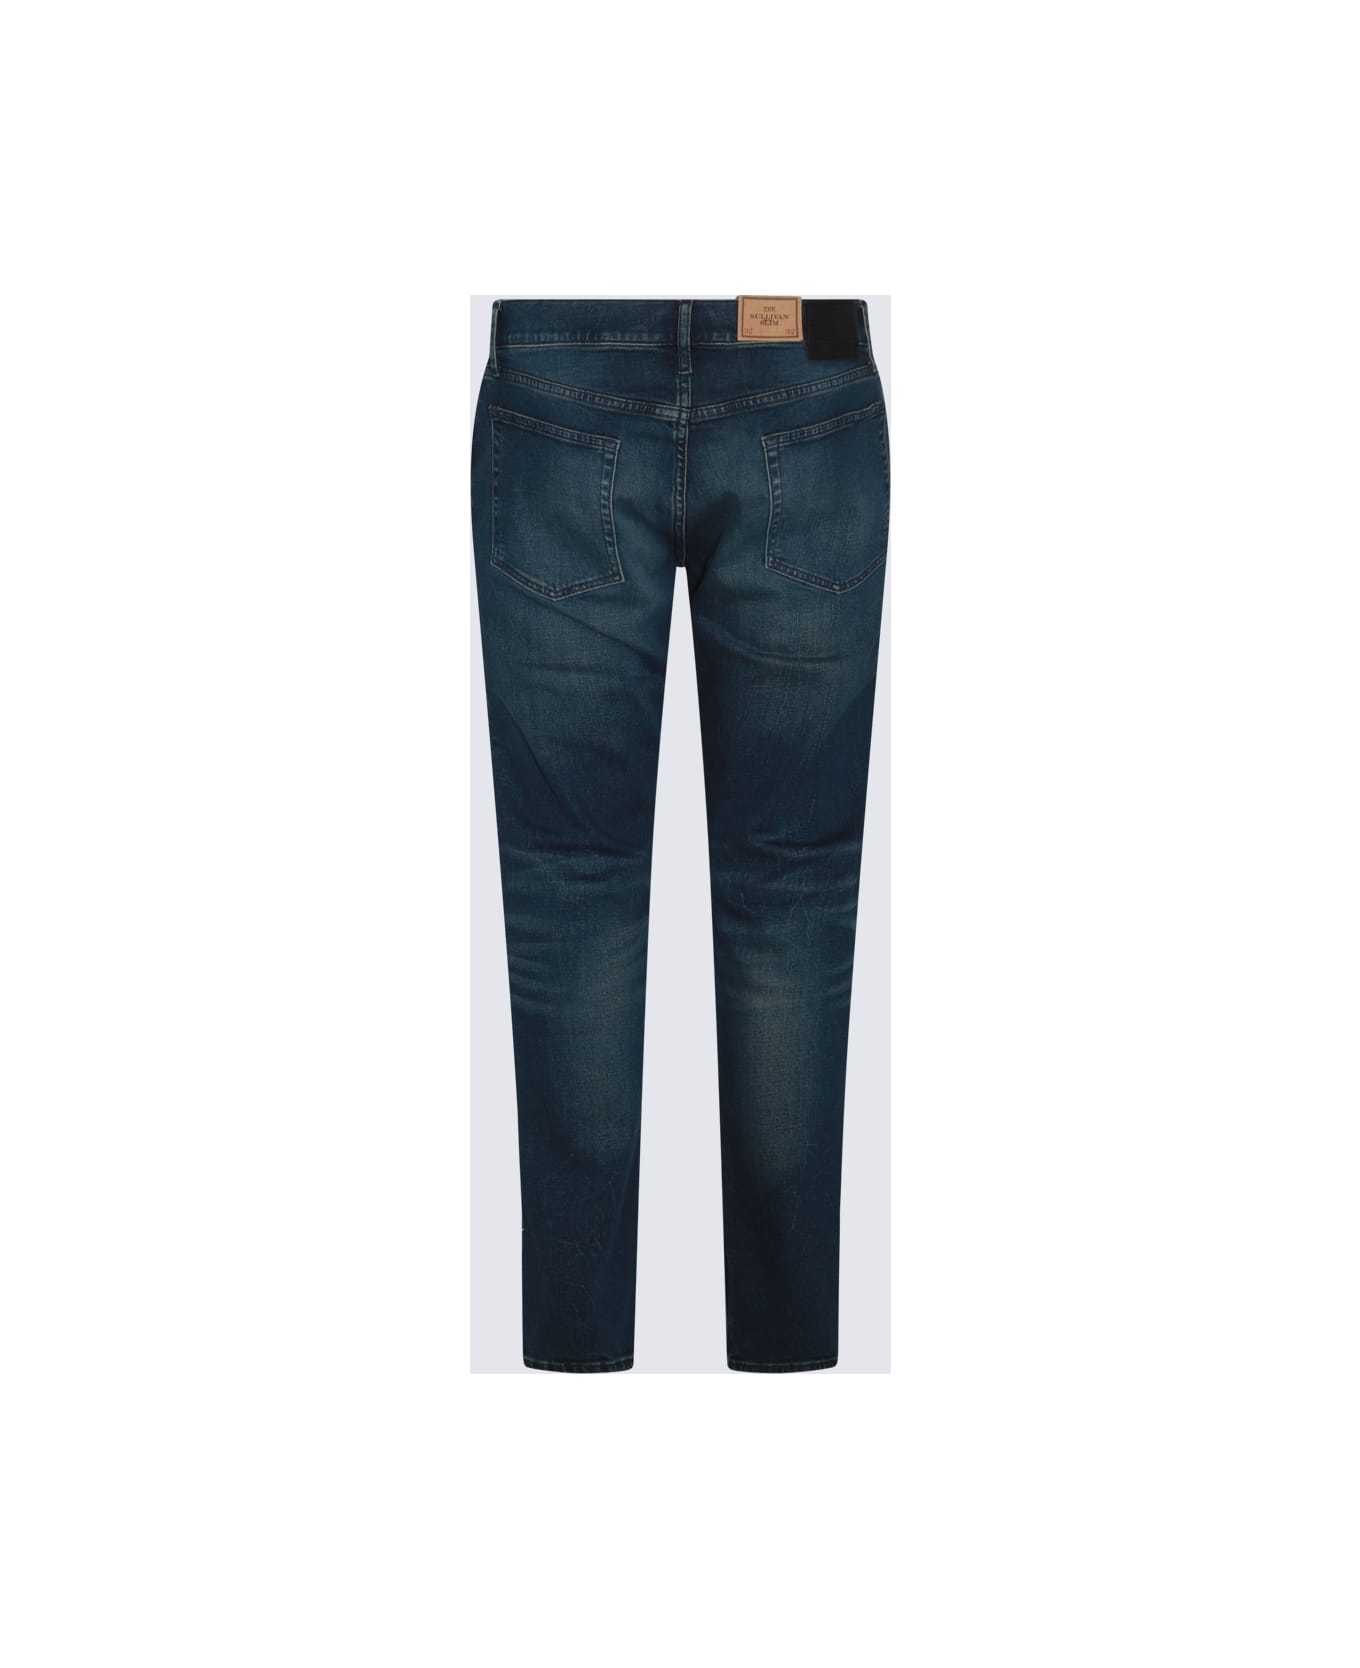 Polo Ralph Lauren Dark Blue Cotton Denim Jeans - MYERS V3